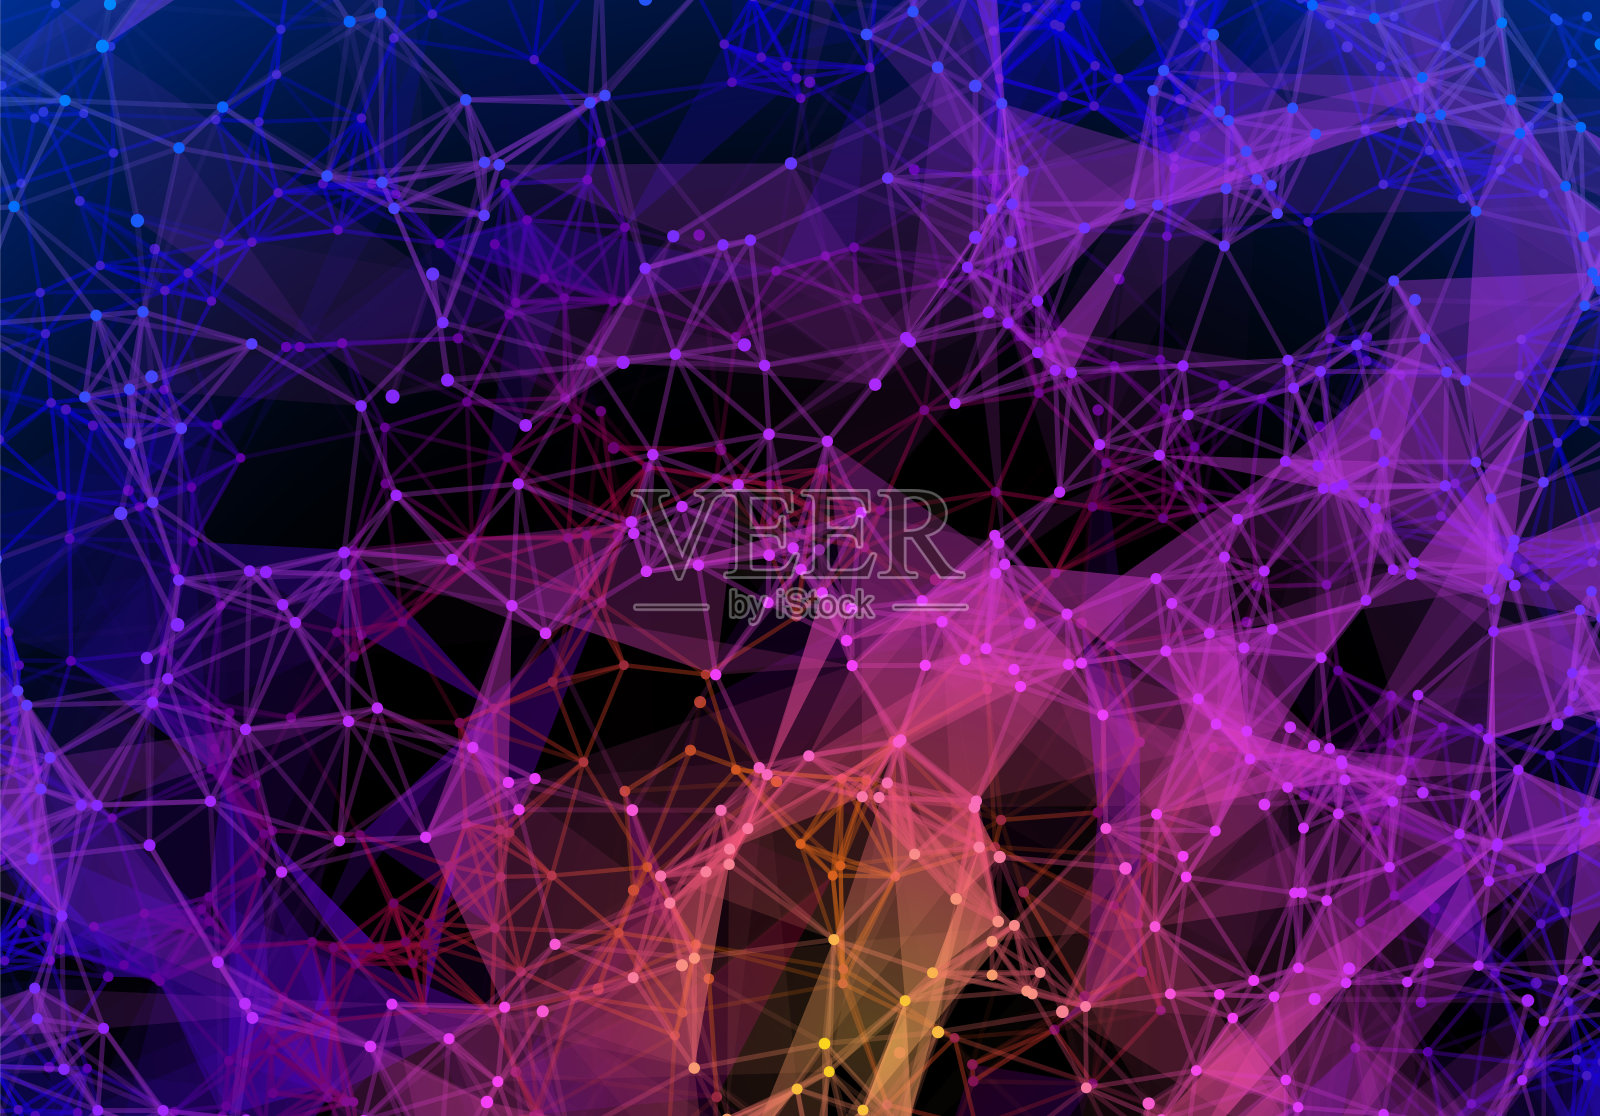 蓝色和紫色的充满活力的三角形网格在黑暗的背景下具有未来主义的技术风格插画图片素材